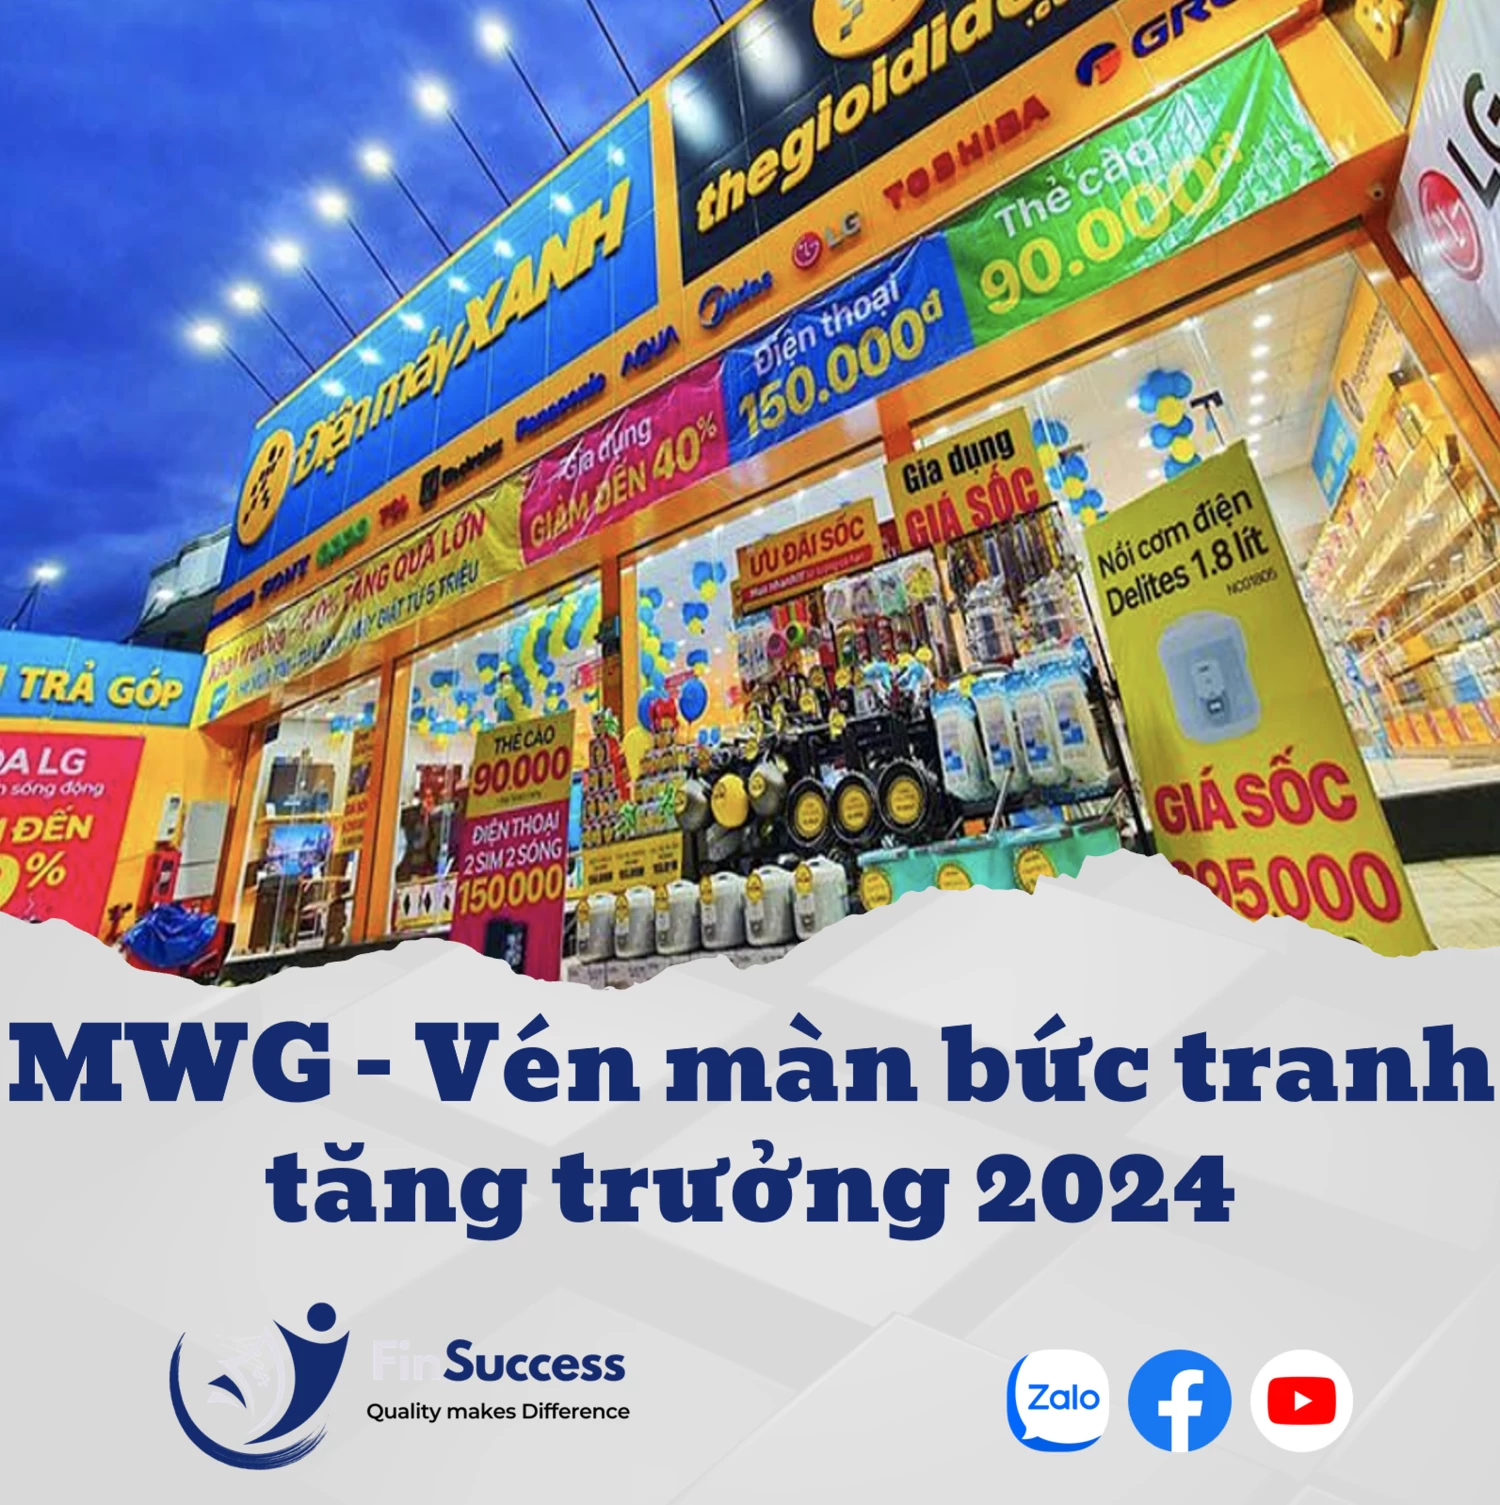 MWG - Vén màn bức tranh tăng trưởng 2024